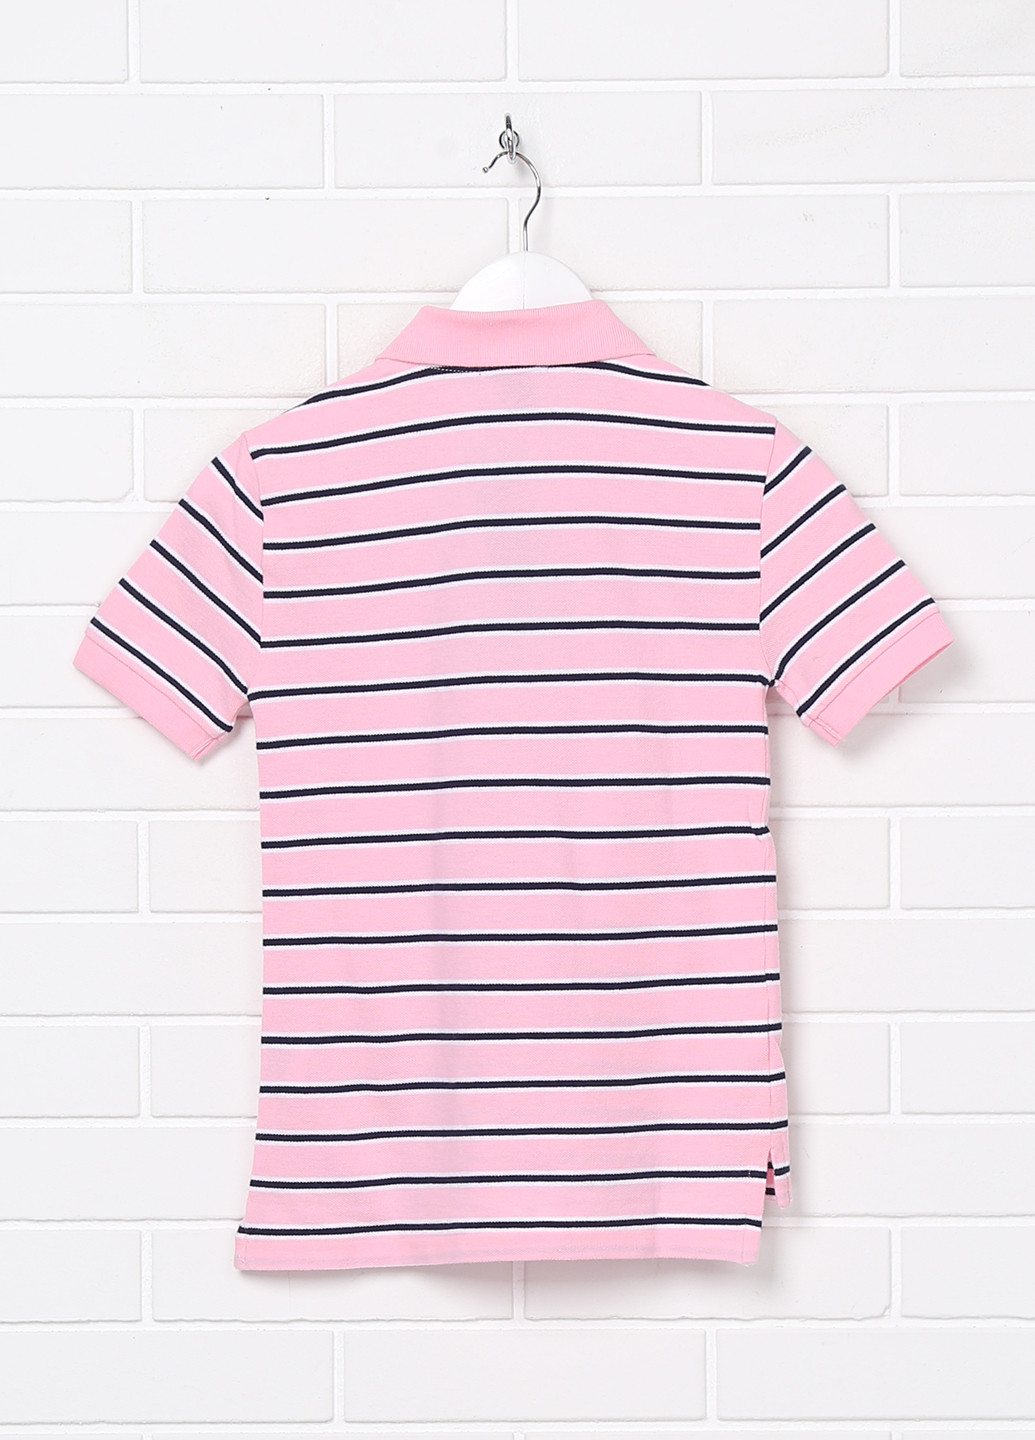 Розовая детская футболка-поло для мальчика Ralph Lauren в полоску